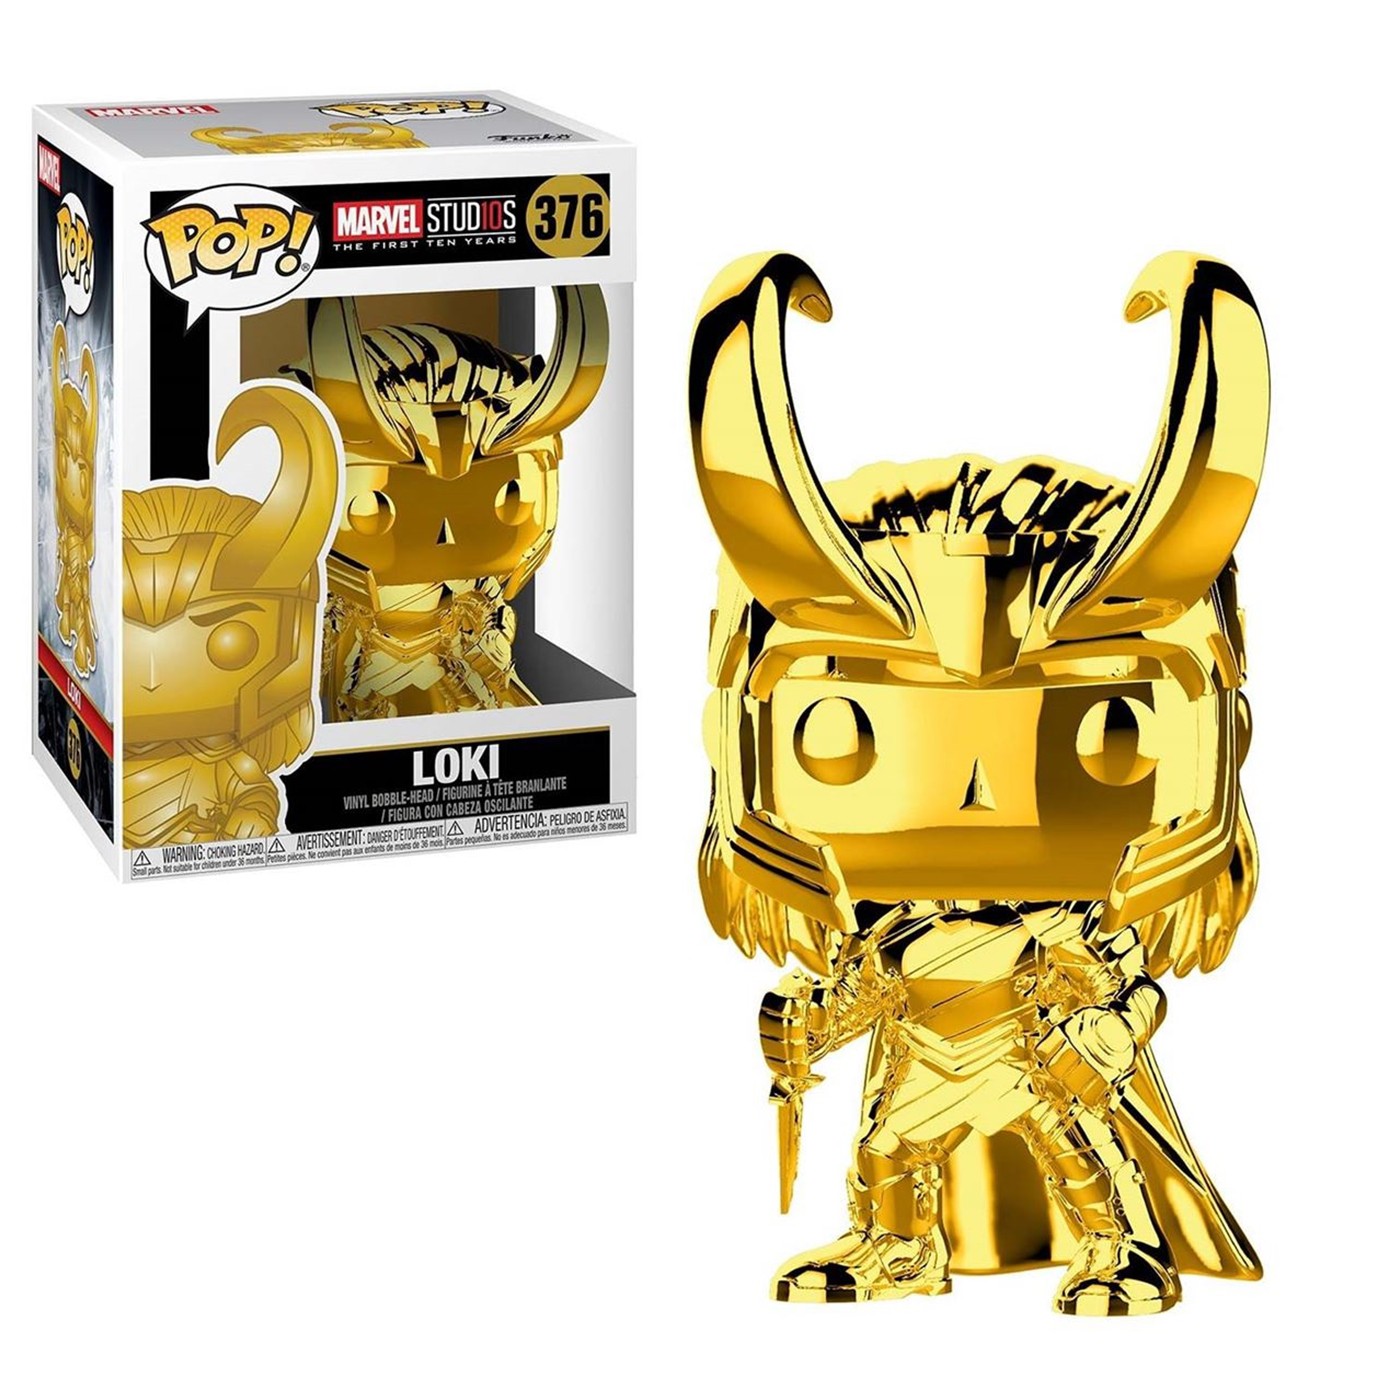 Marvel Studios 10th Anniv Loki Gold Chrome Funko Pop